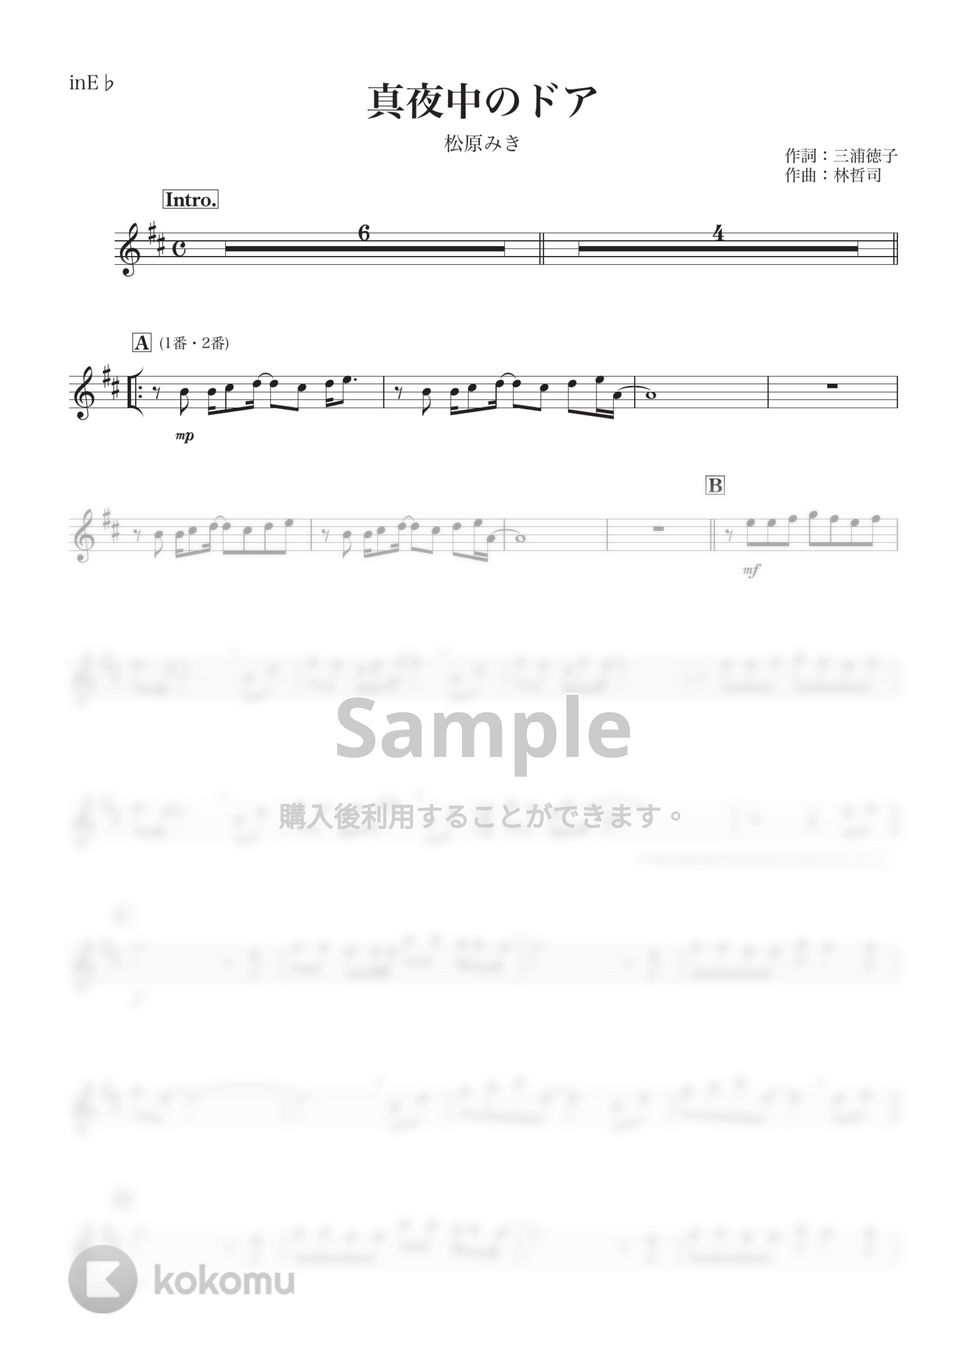 松原みき - 真夜中のドア (E♭) by kanamusic